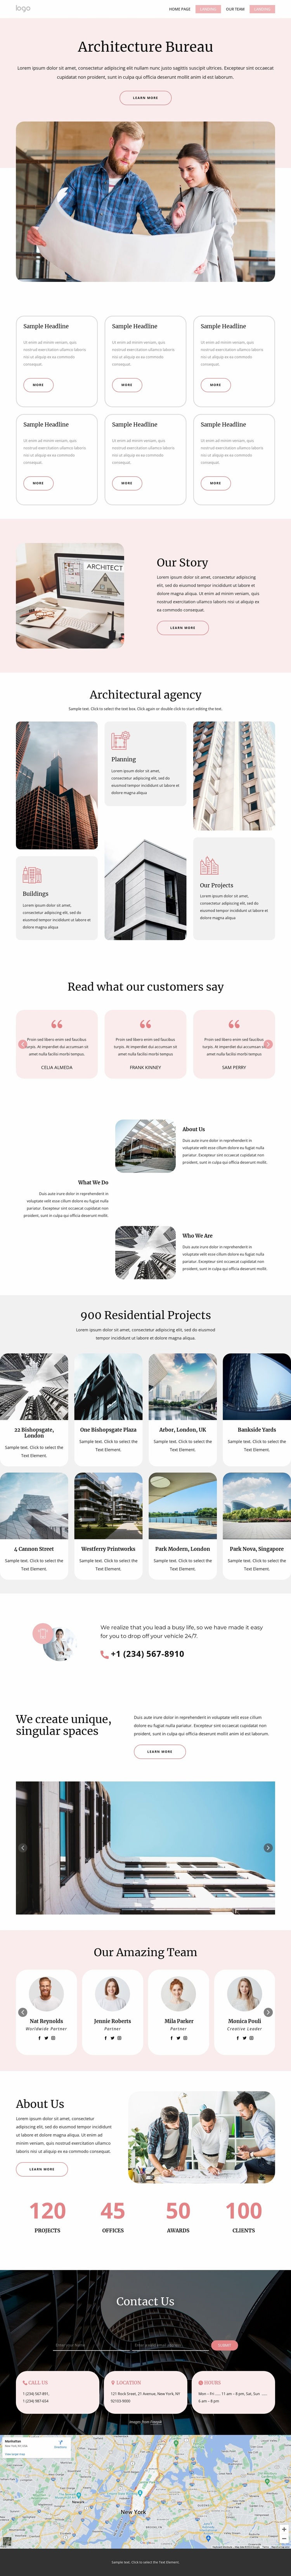 Architecture bureau Website Design